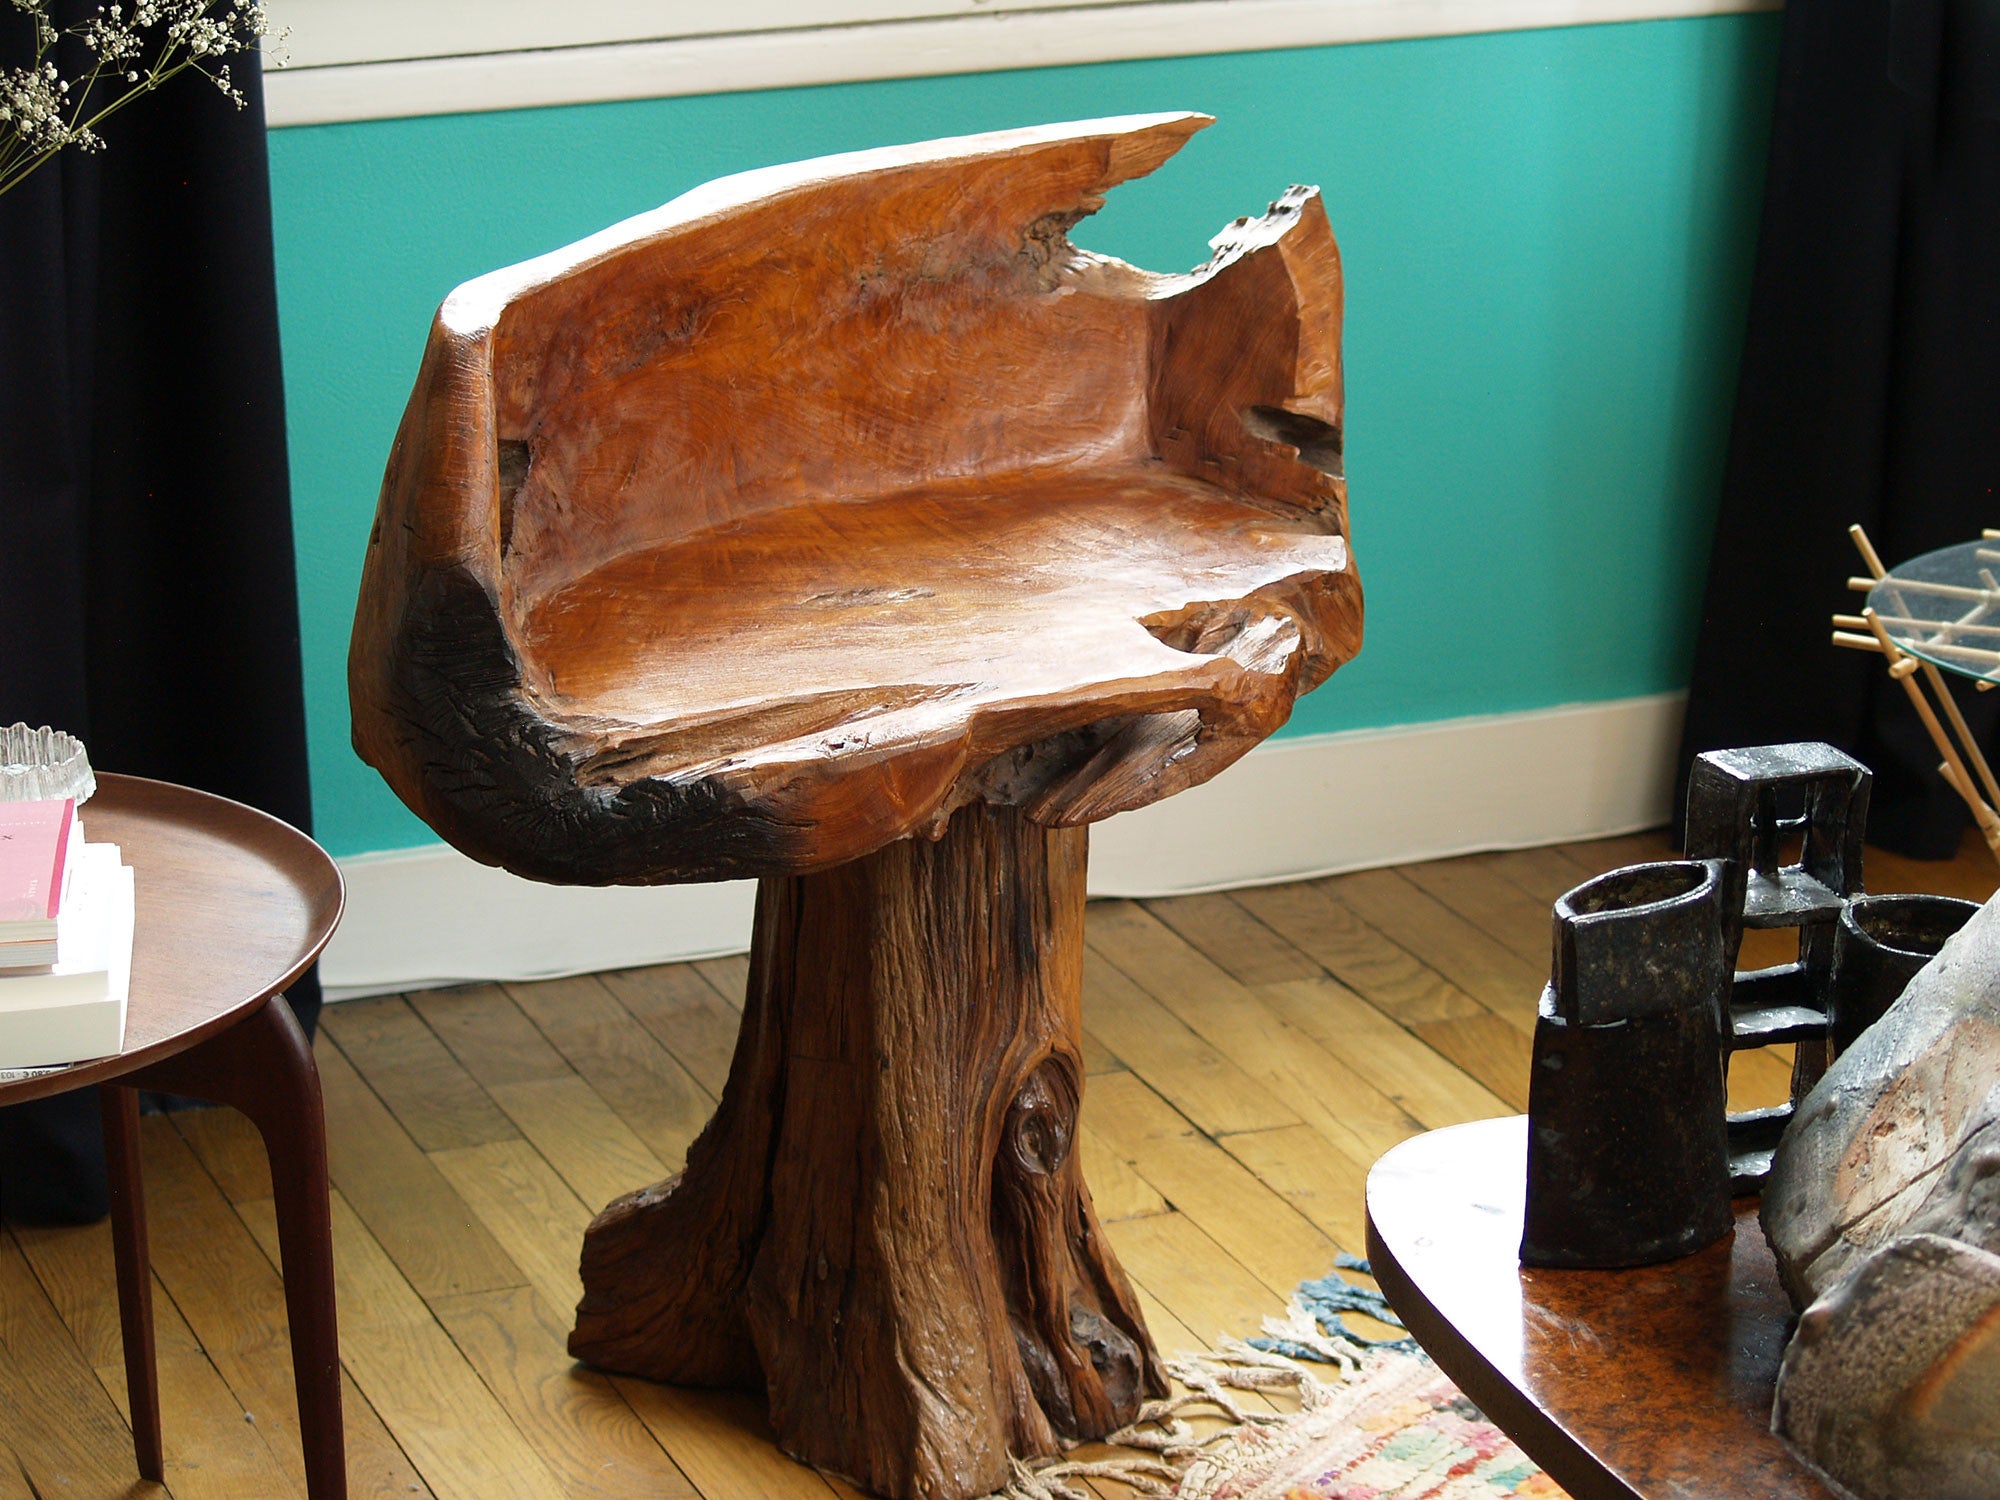 Fauteuil "primitiviste" en bois sculpté, France (vers 1970)..Dug-out natural wood Chair, France (circa 1970)